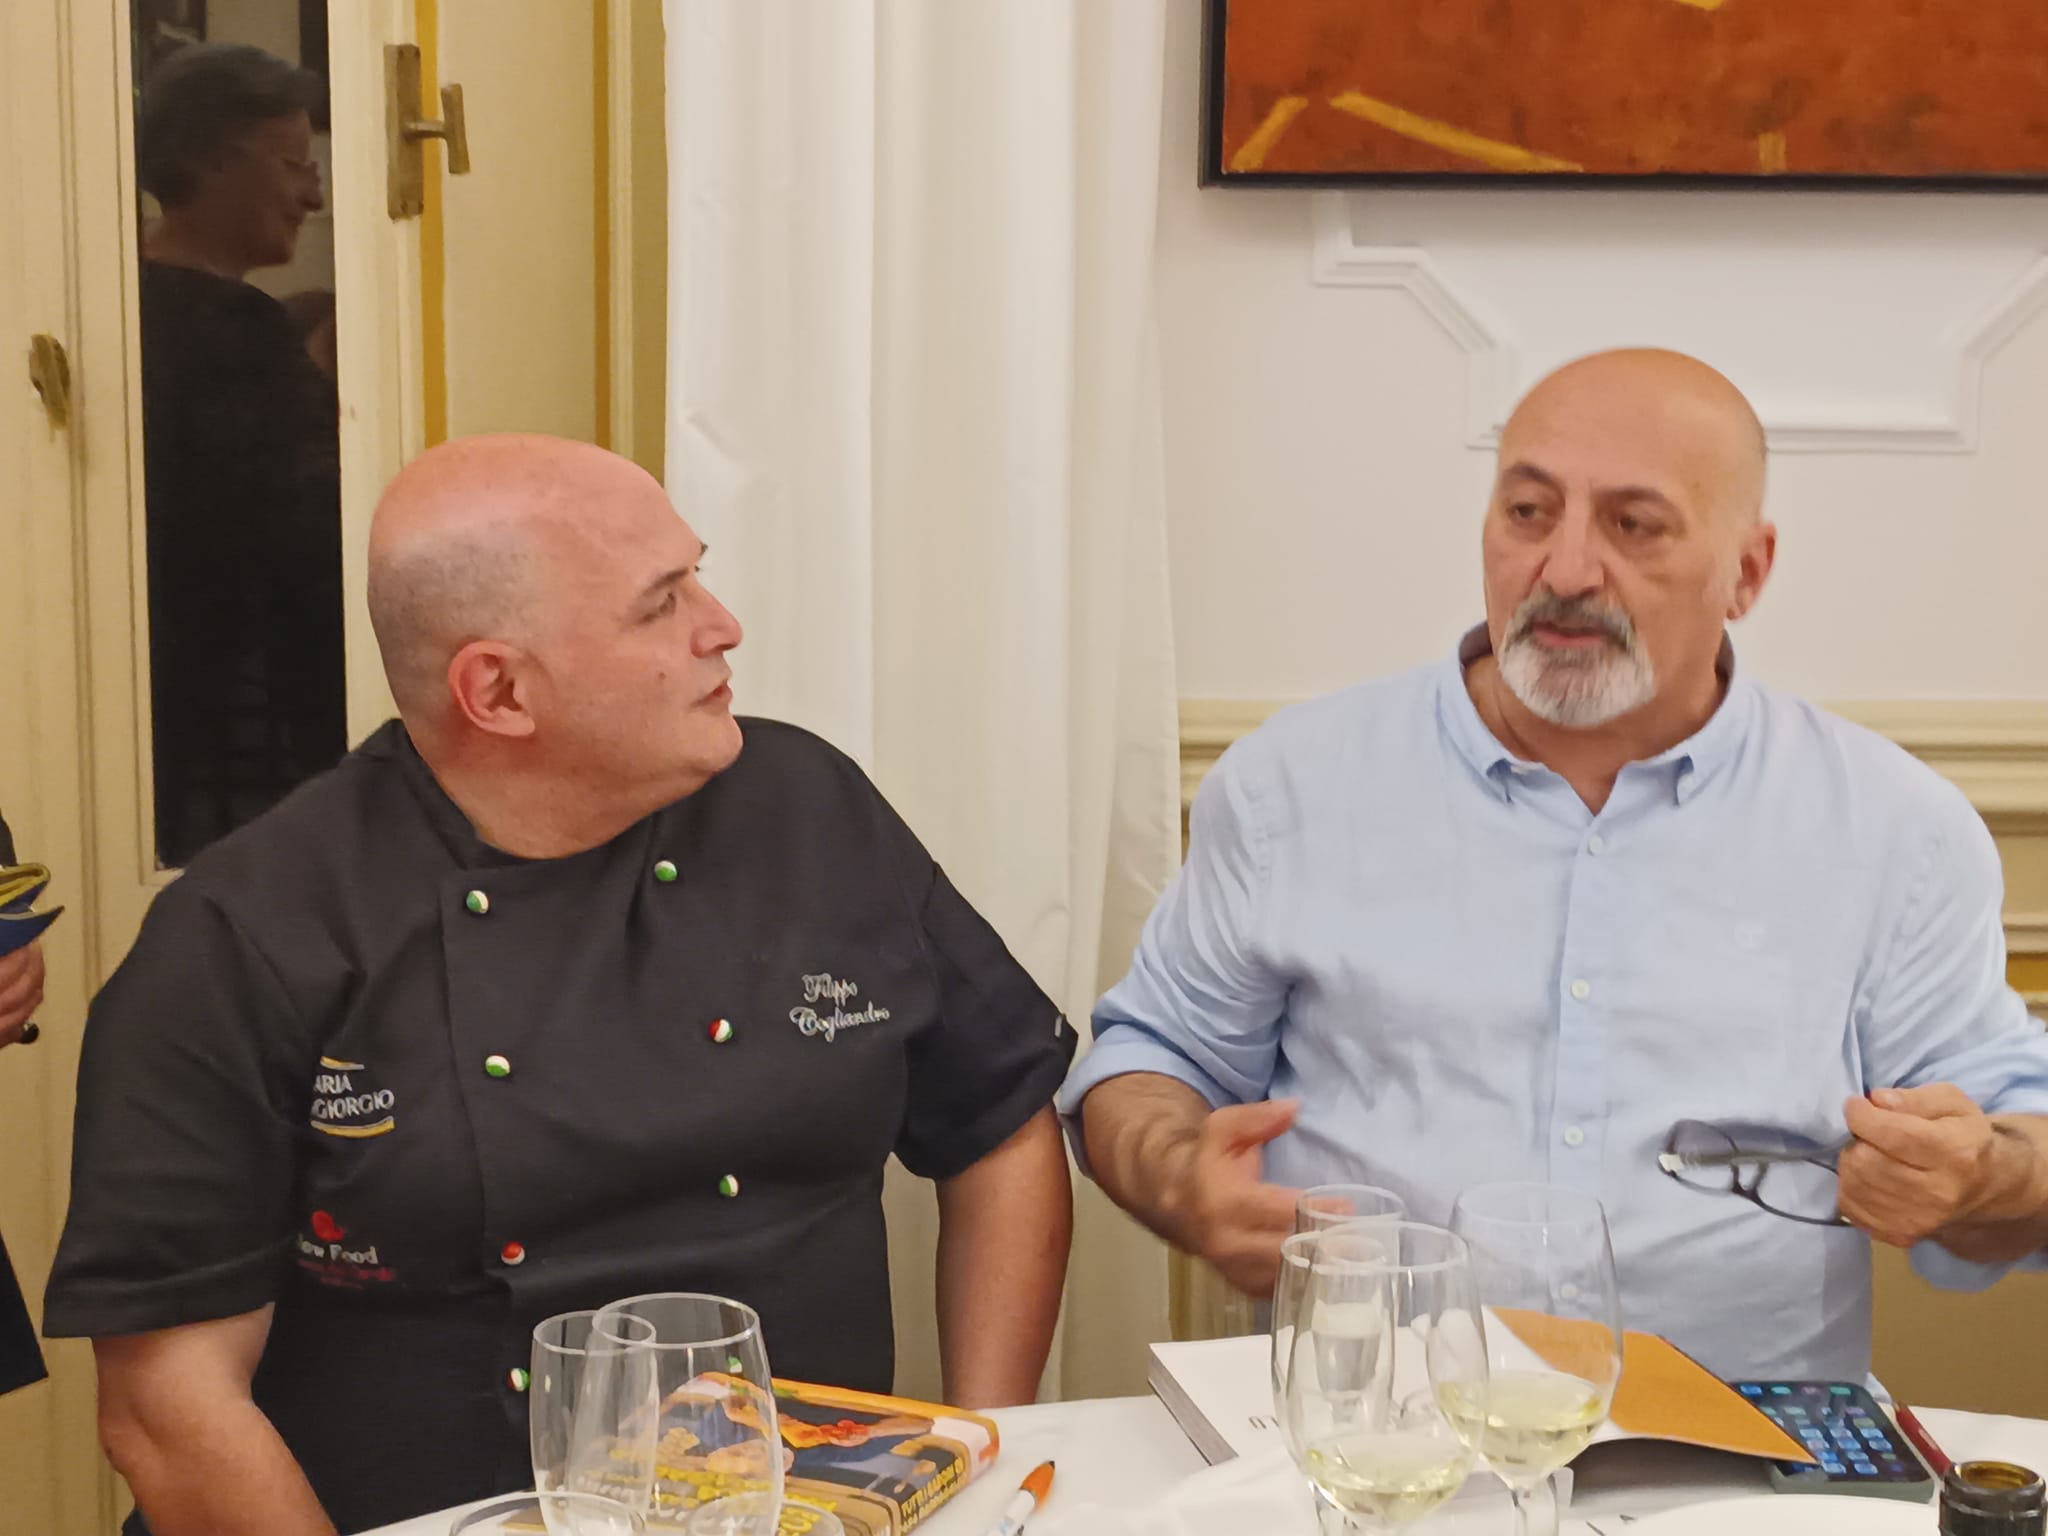 La Calabria di Filippo Cogliandro incontra la Toscana di Luca Pappagallo  durante la “Cena a 4 mani” - New Entry Magazine